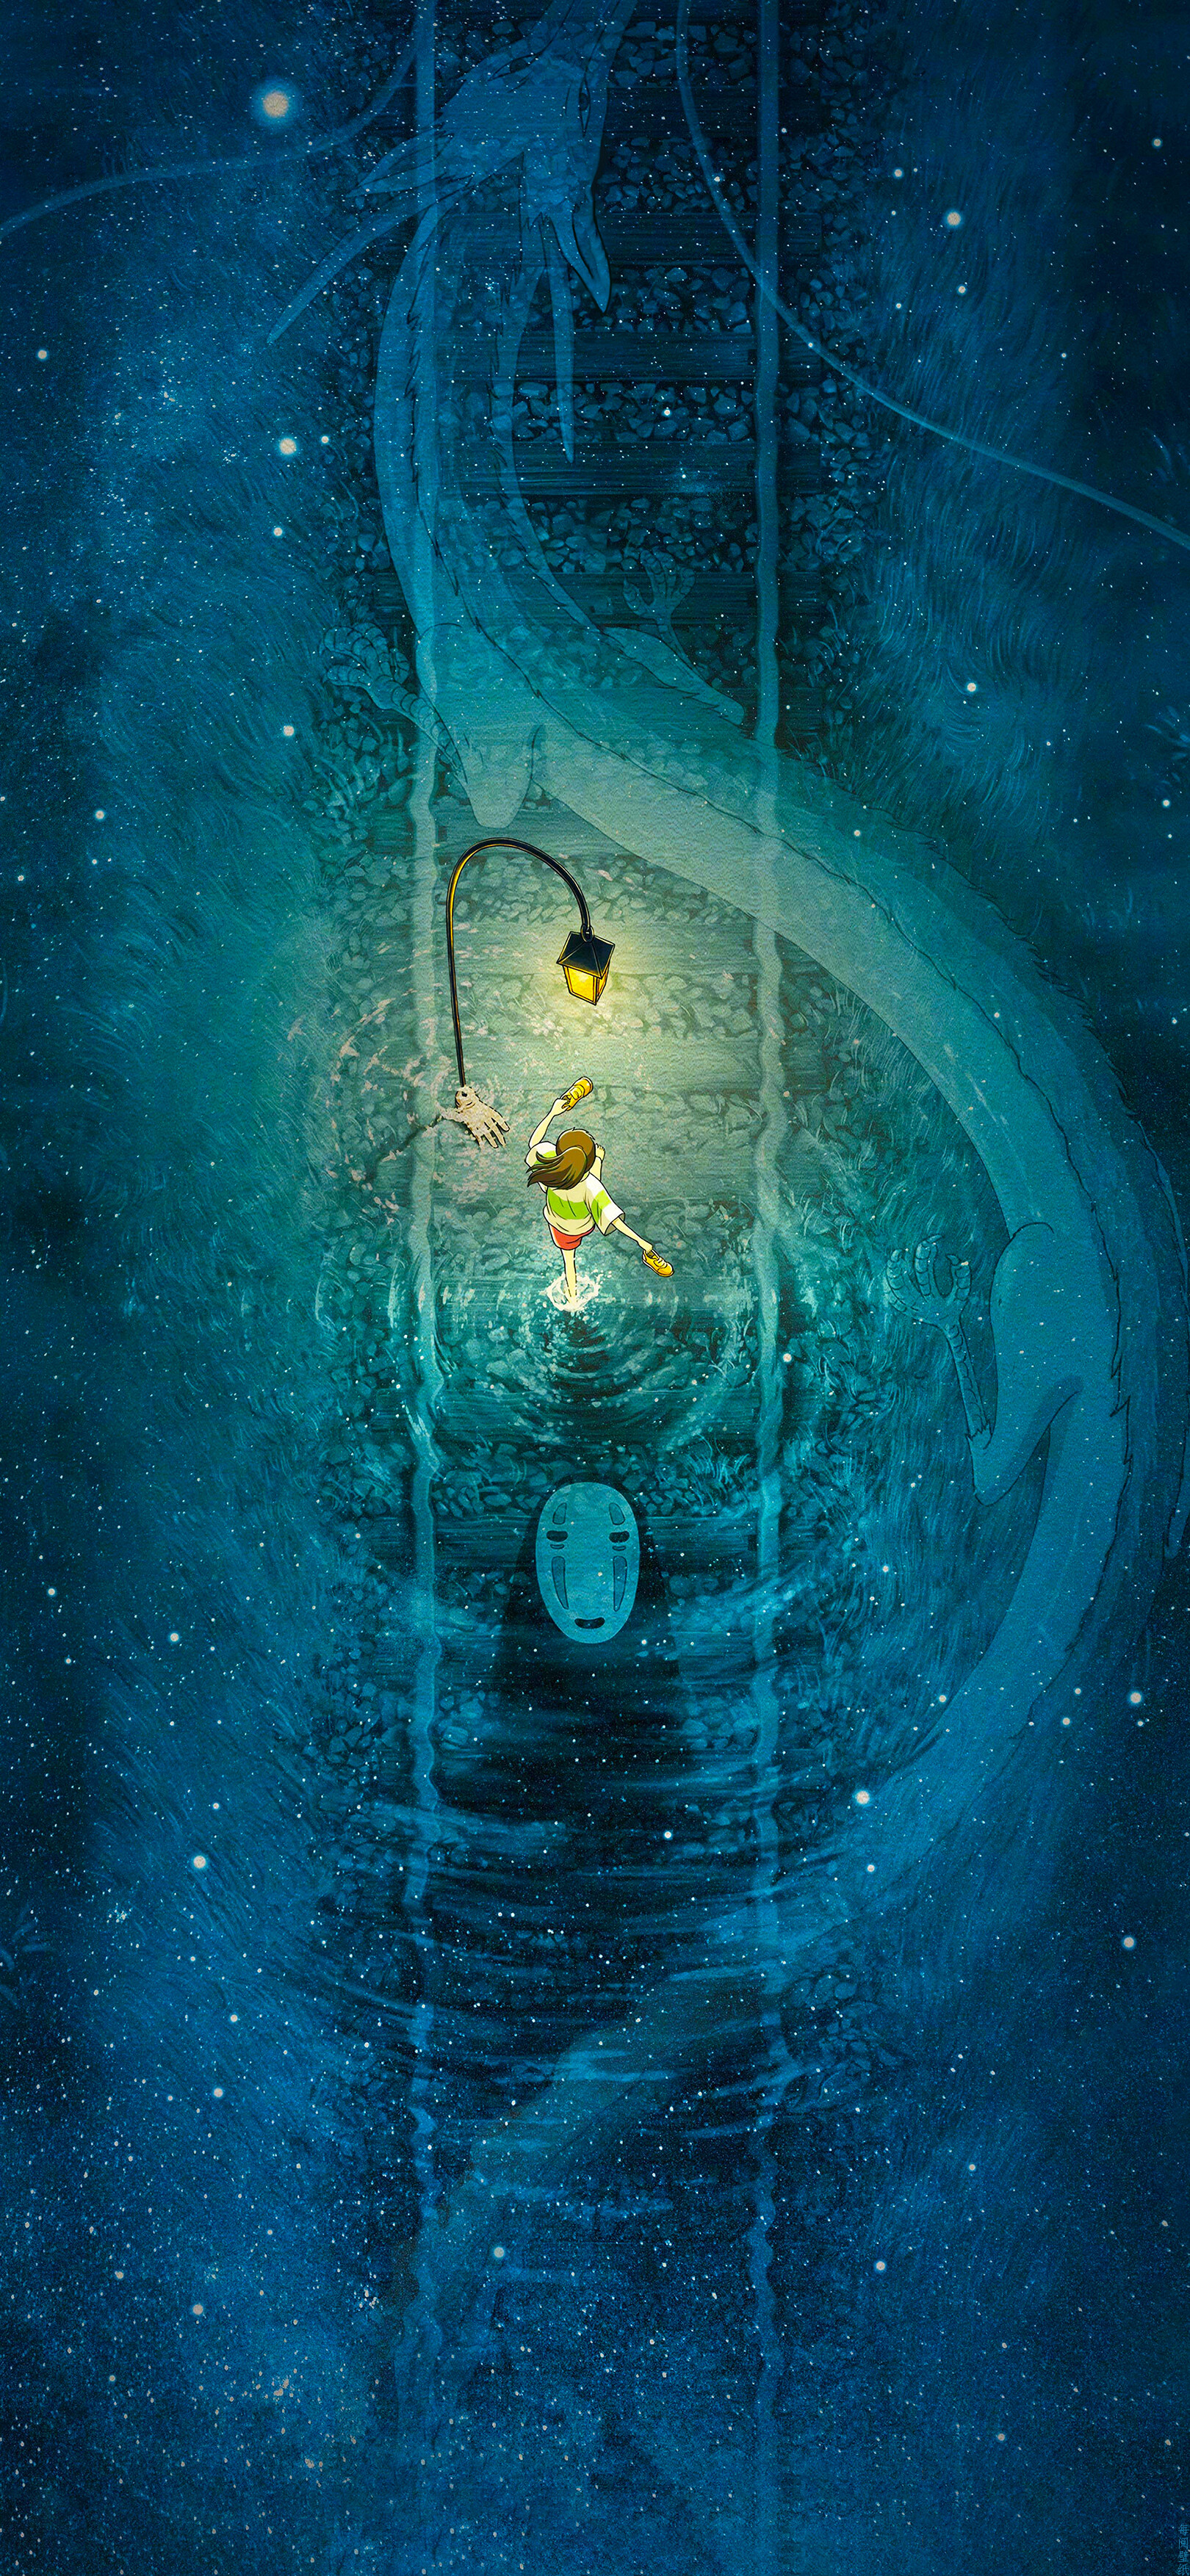 Studio Ghibli: Hayao Miyazaki, Spirited Away, Chihiro Ogino. 1620x3510 HD Wallpaper.